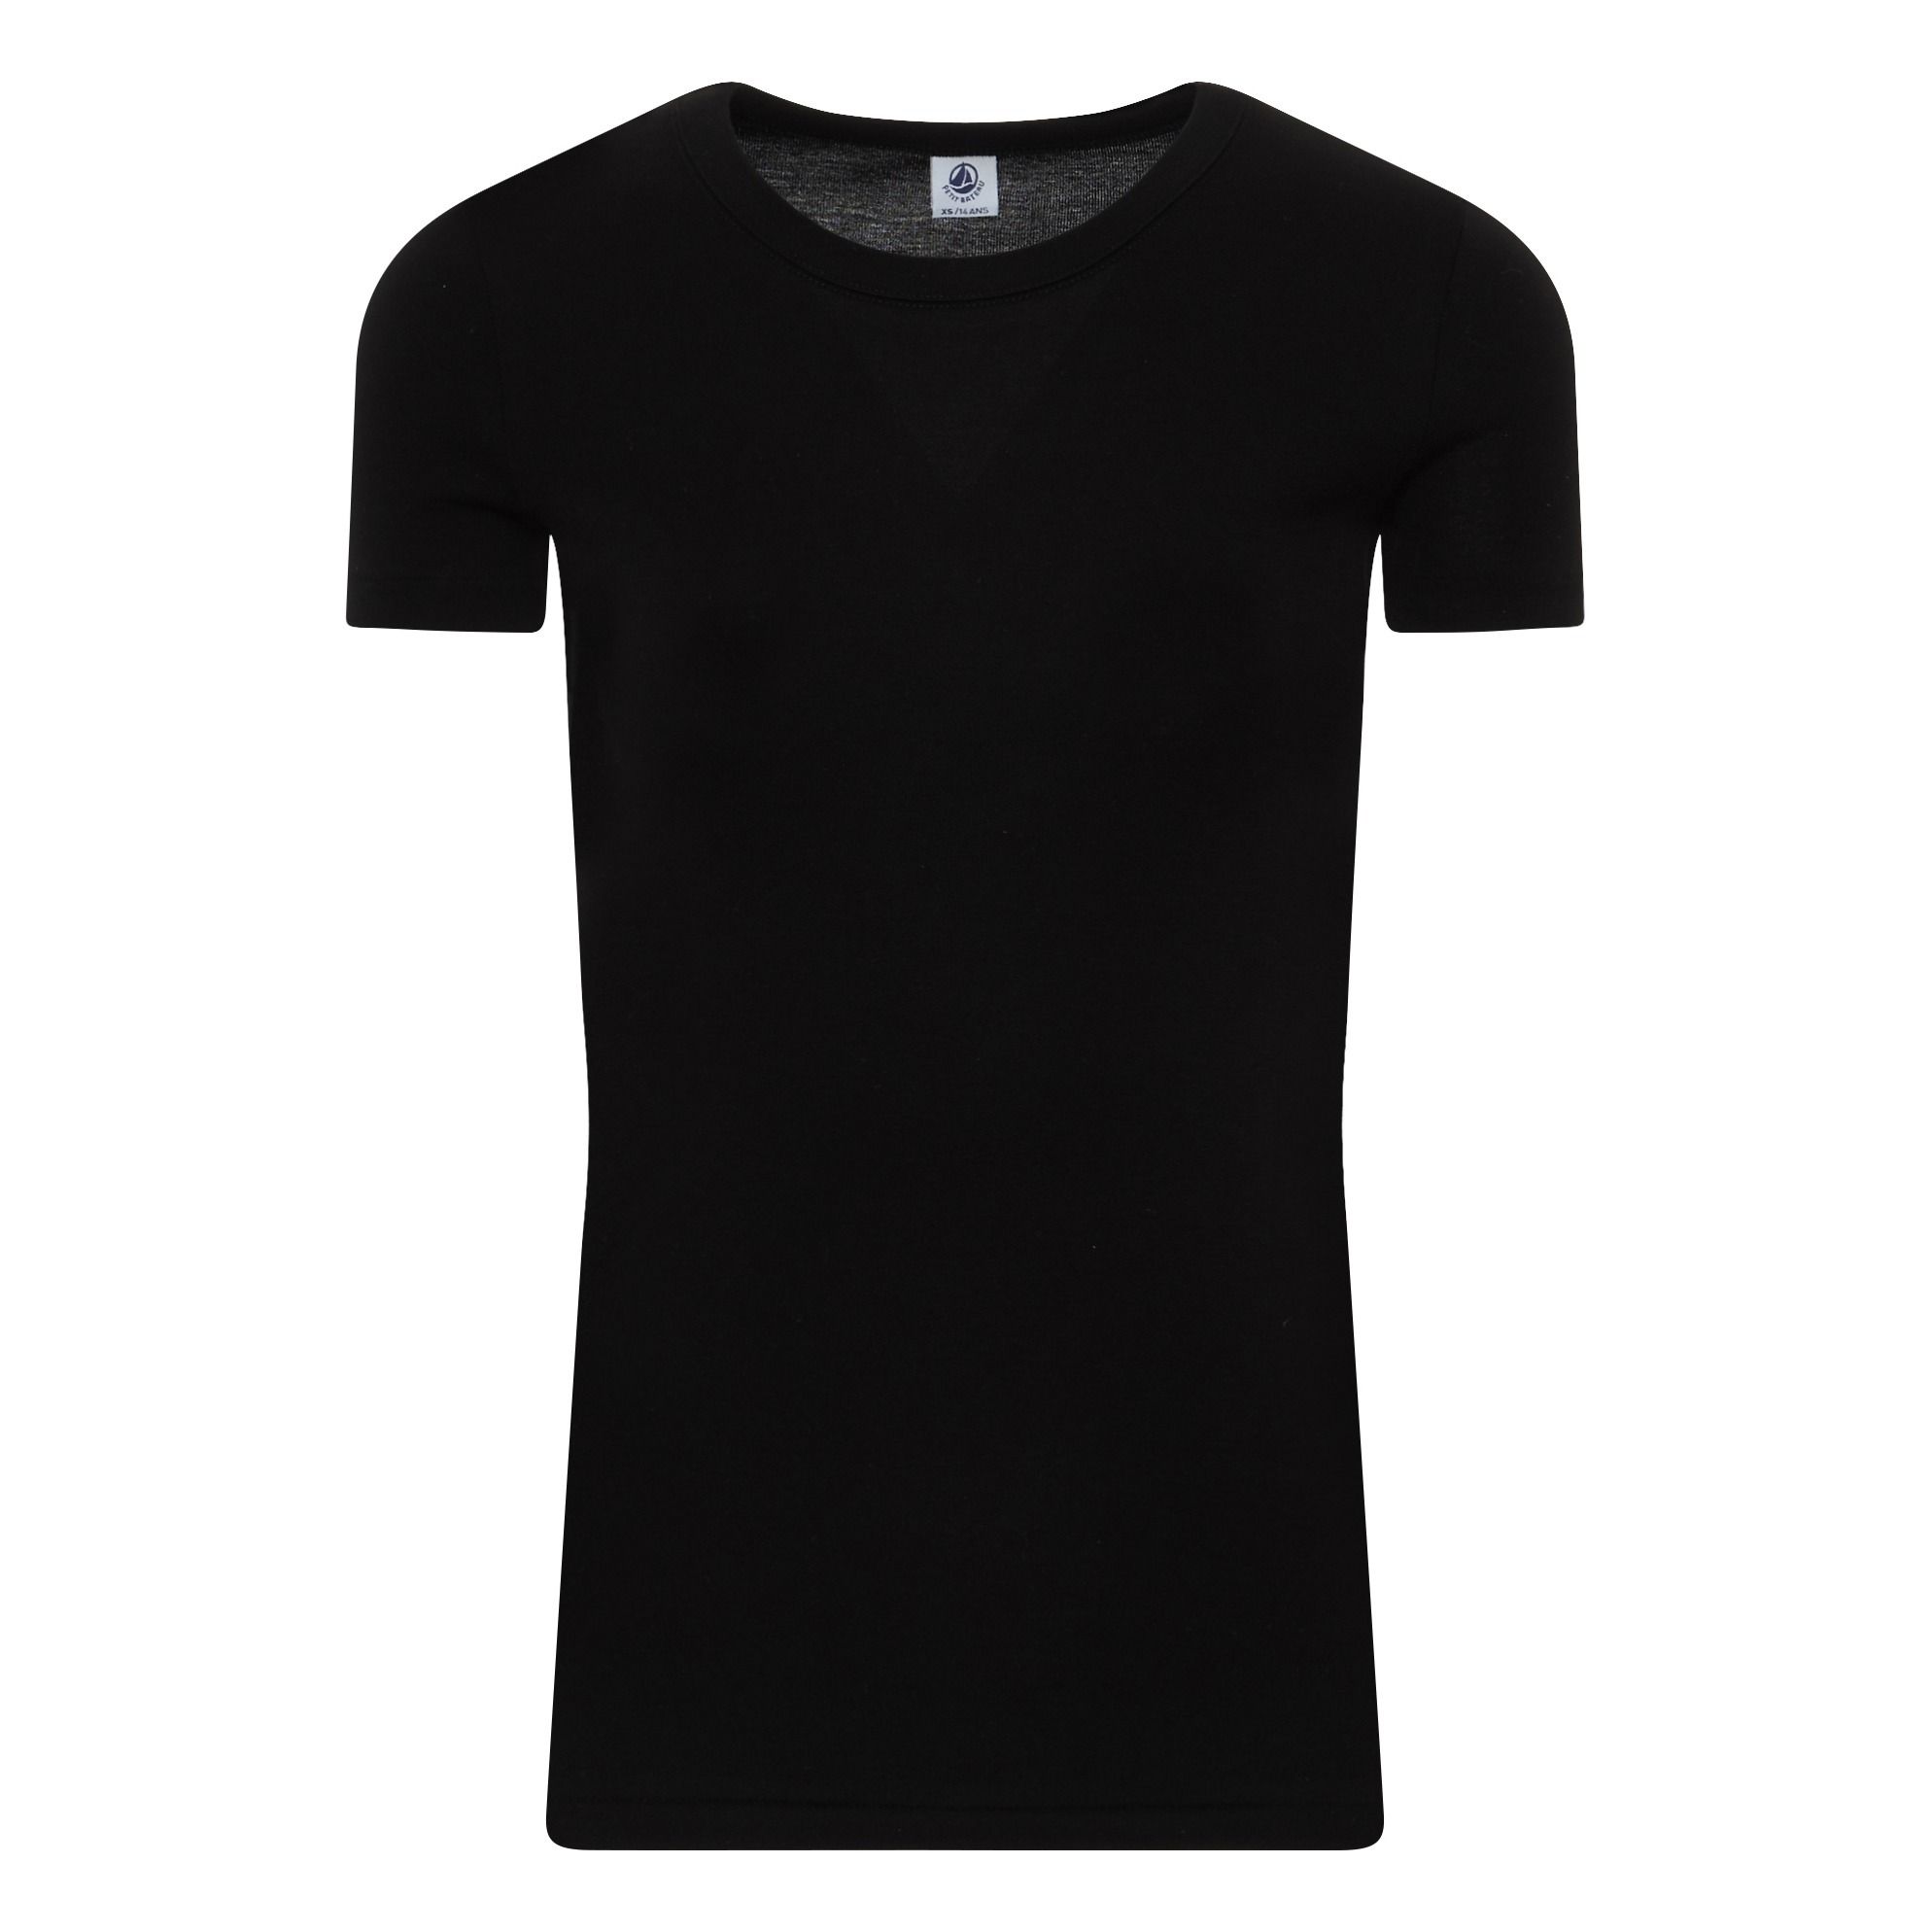 Petit Bateau - T-Shirt Uni - Collection Adulte - - Femme - Noir